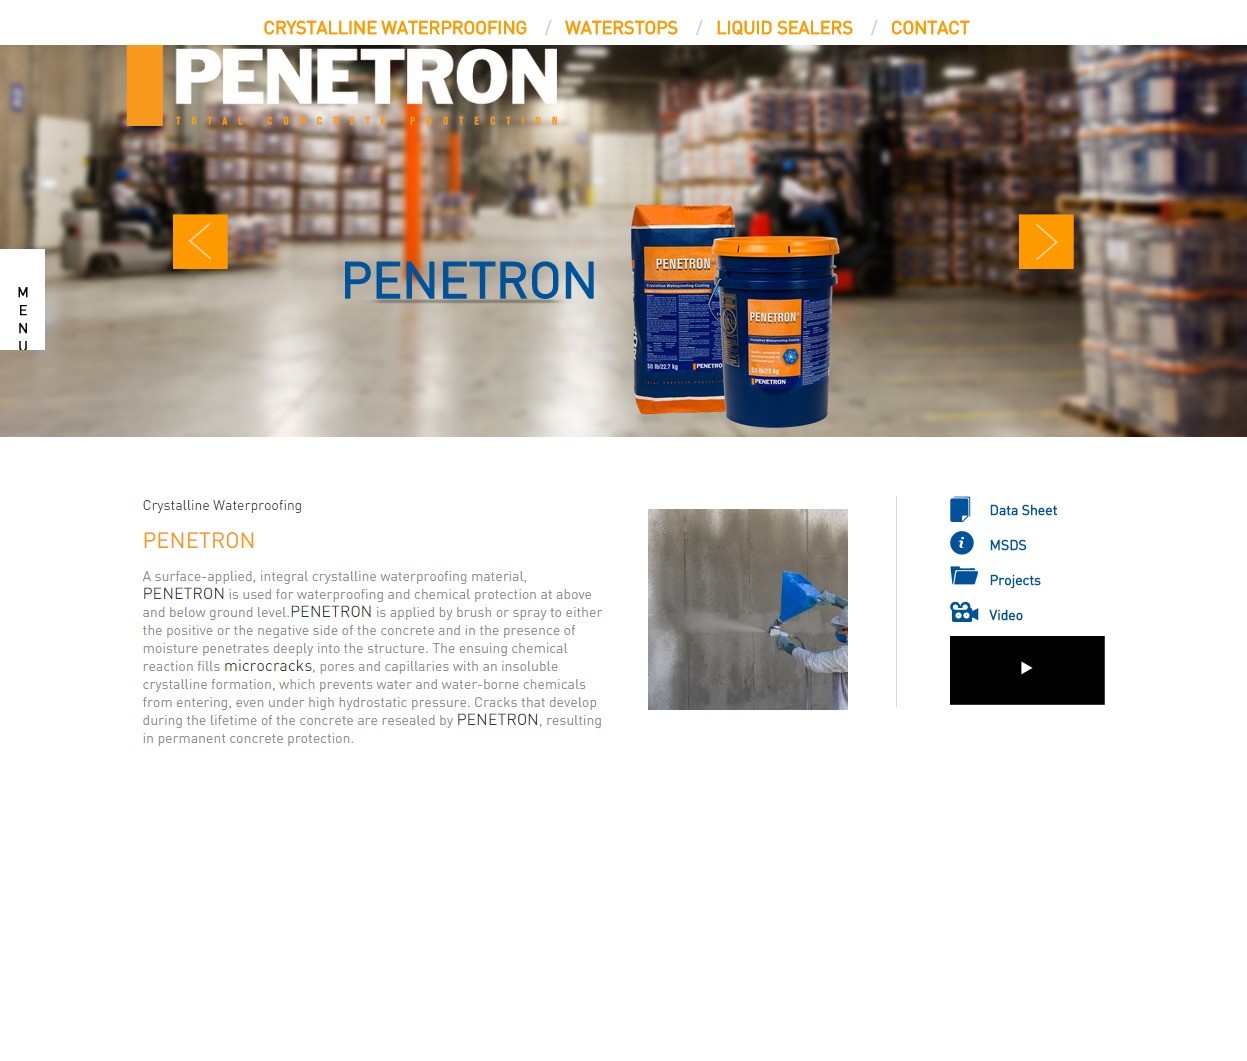 PENETRON Product Details